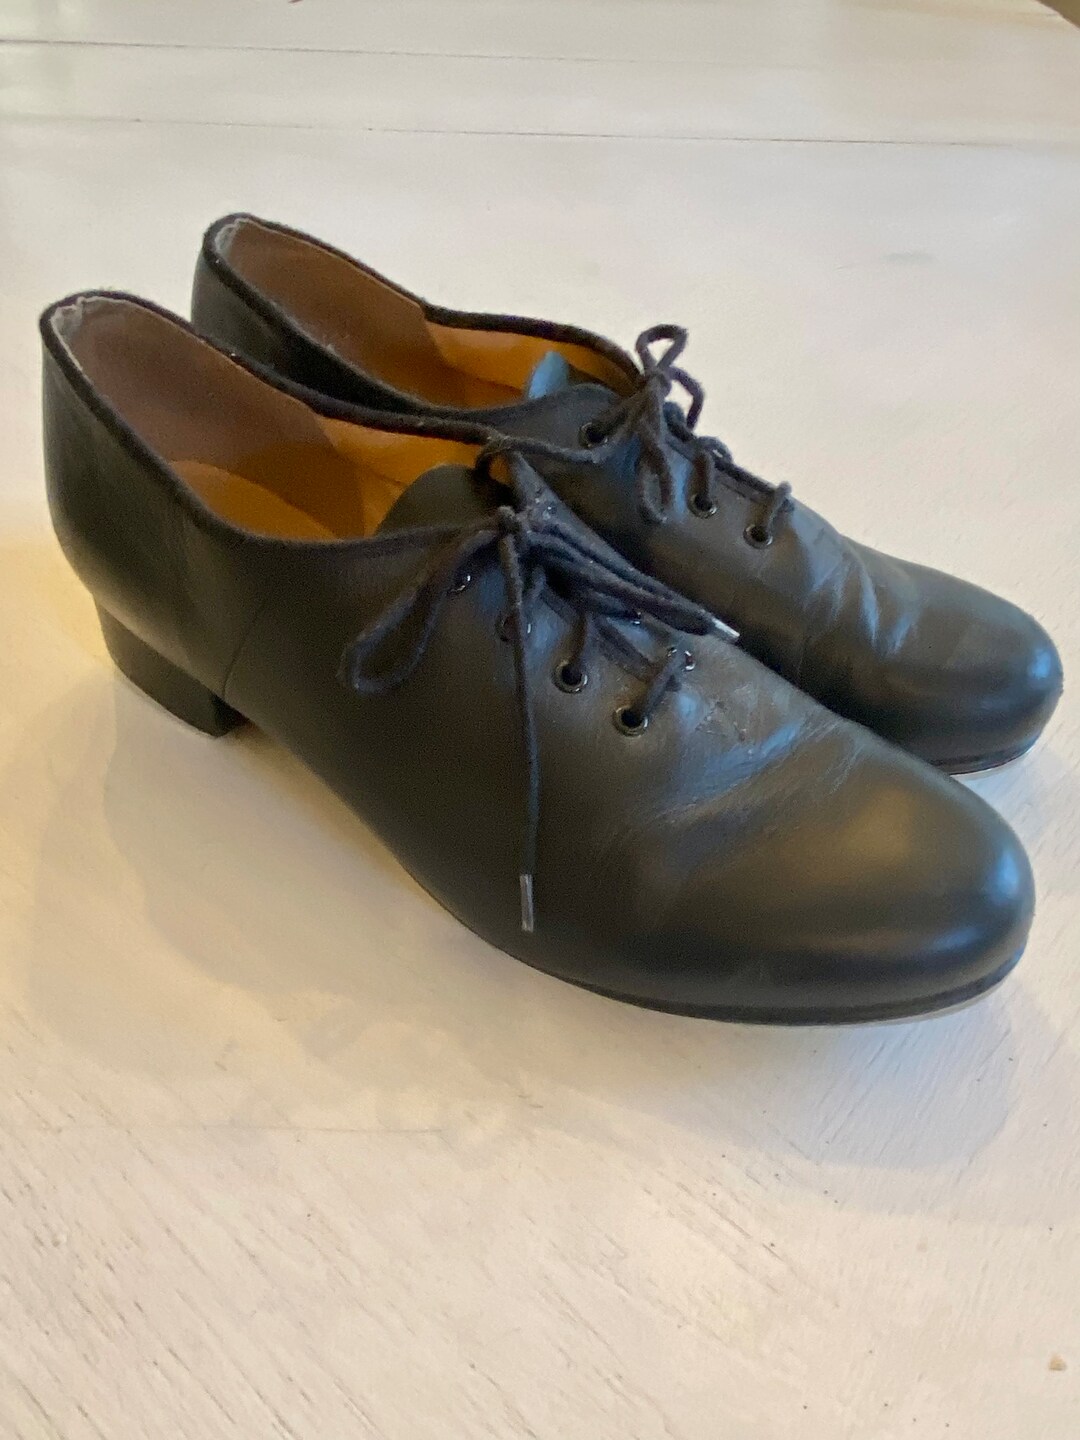 Vintage Bloch Black Leather Tap Shoes / Dance Shoes Women's Size 10 - Etsy